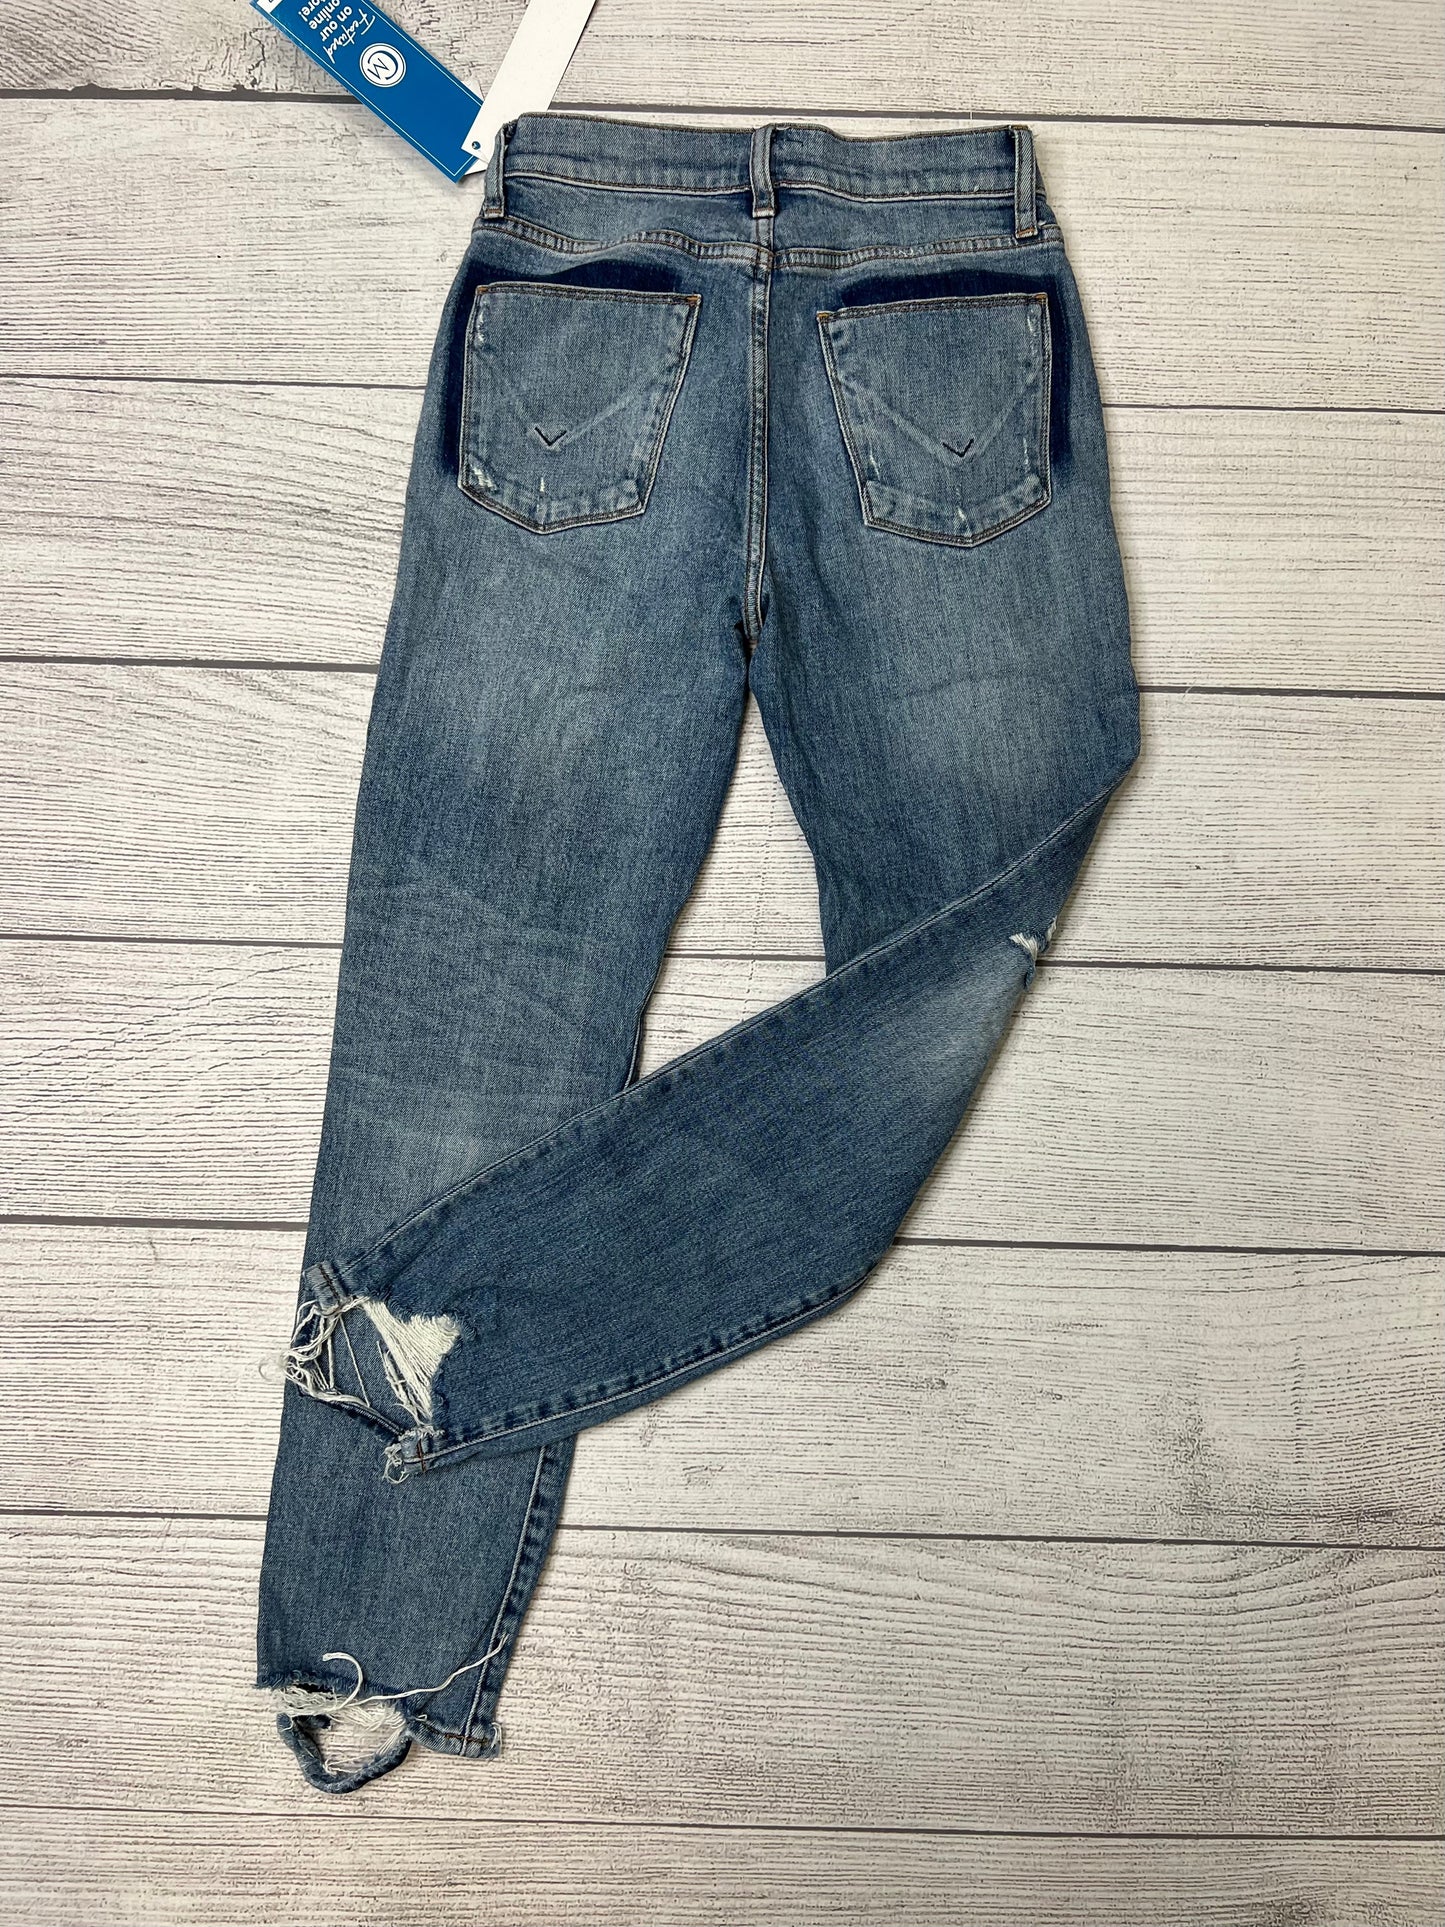 Blue Jeans Designer Hudson, Size 0